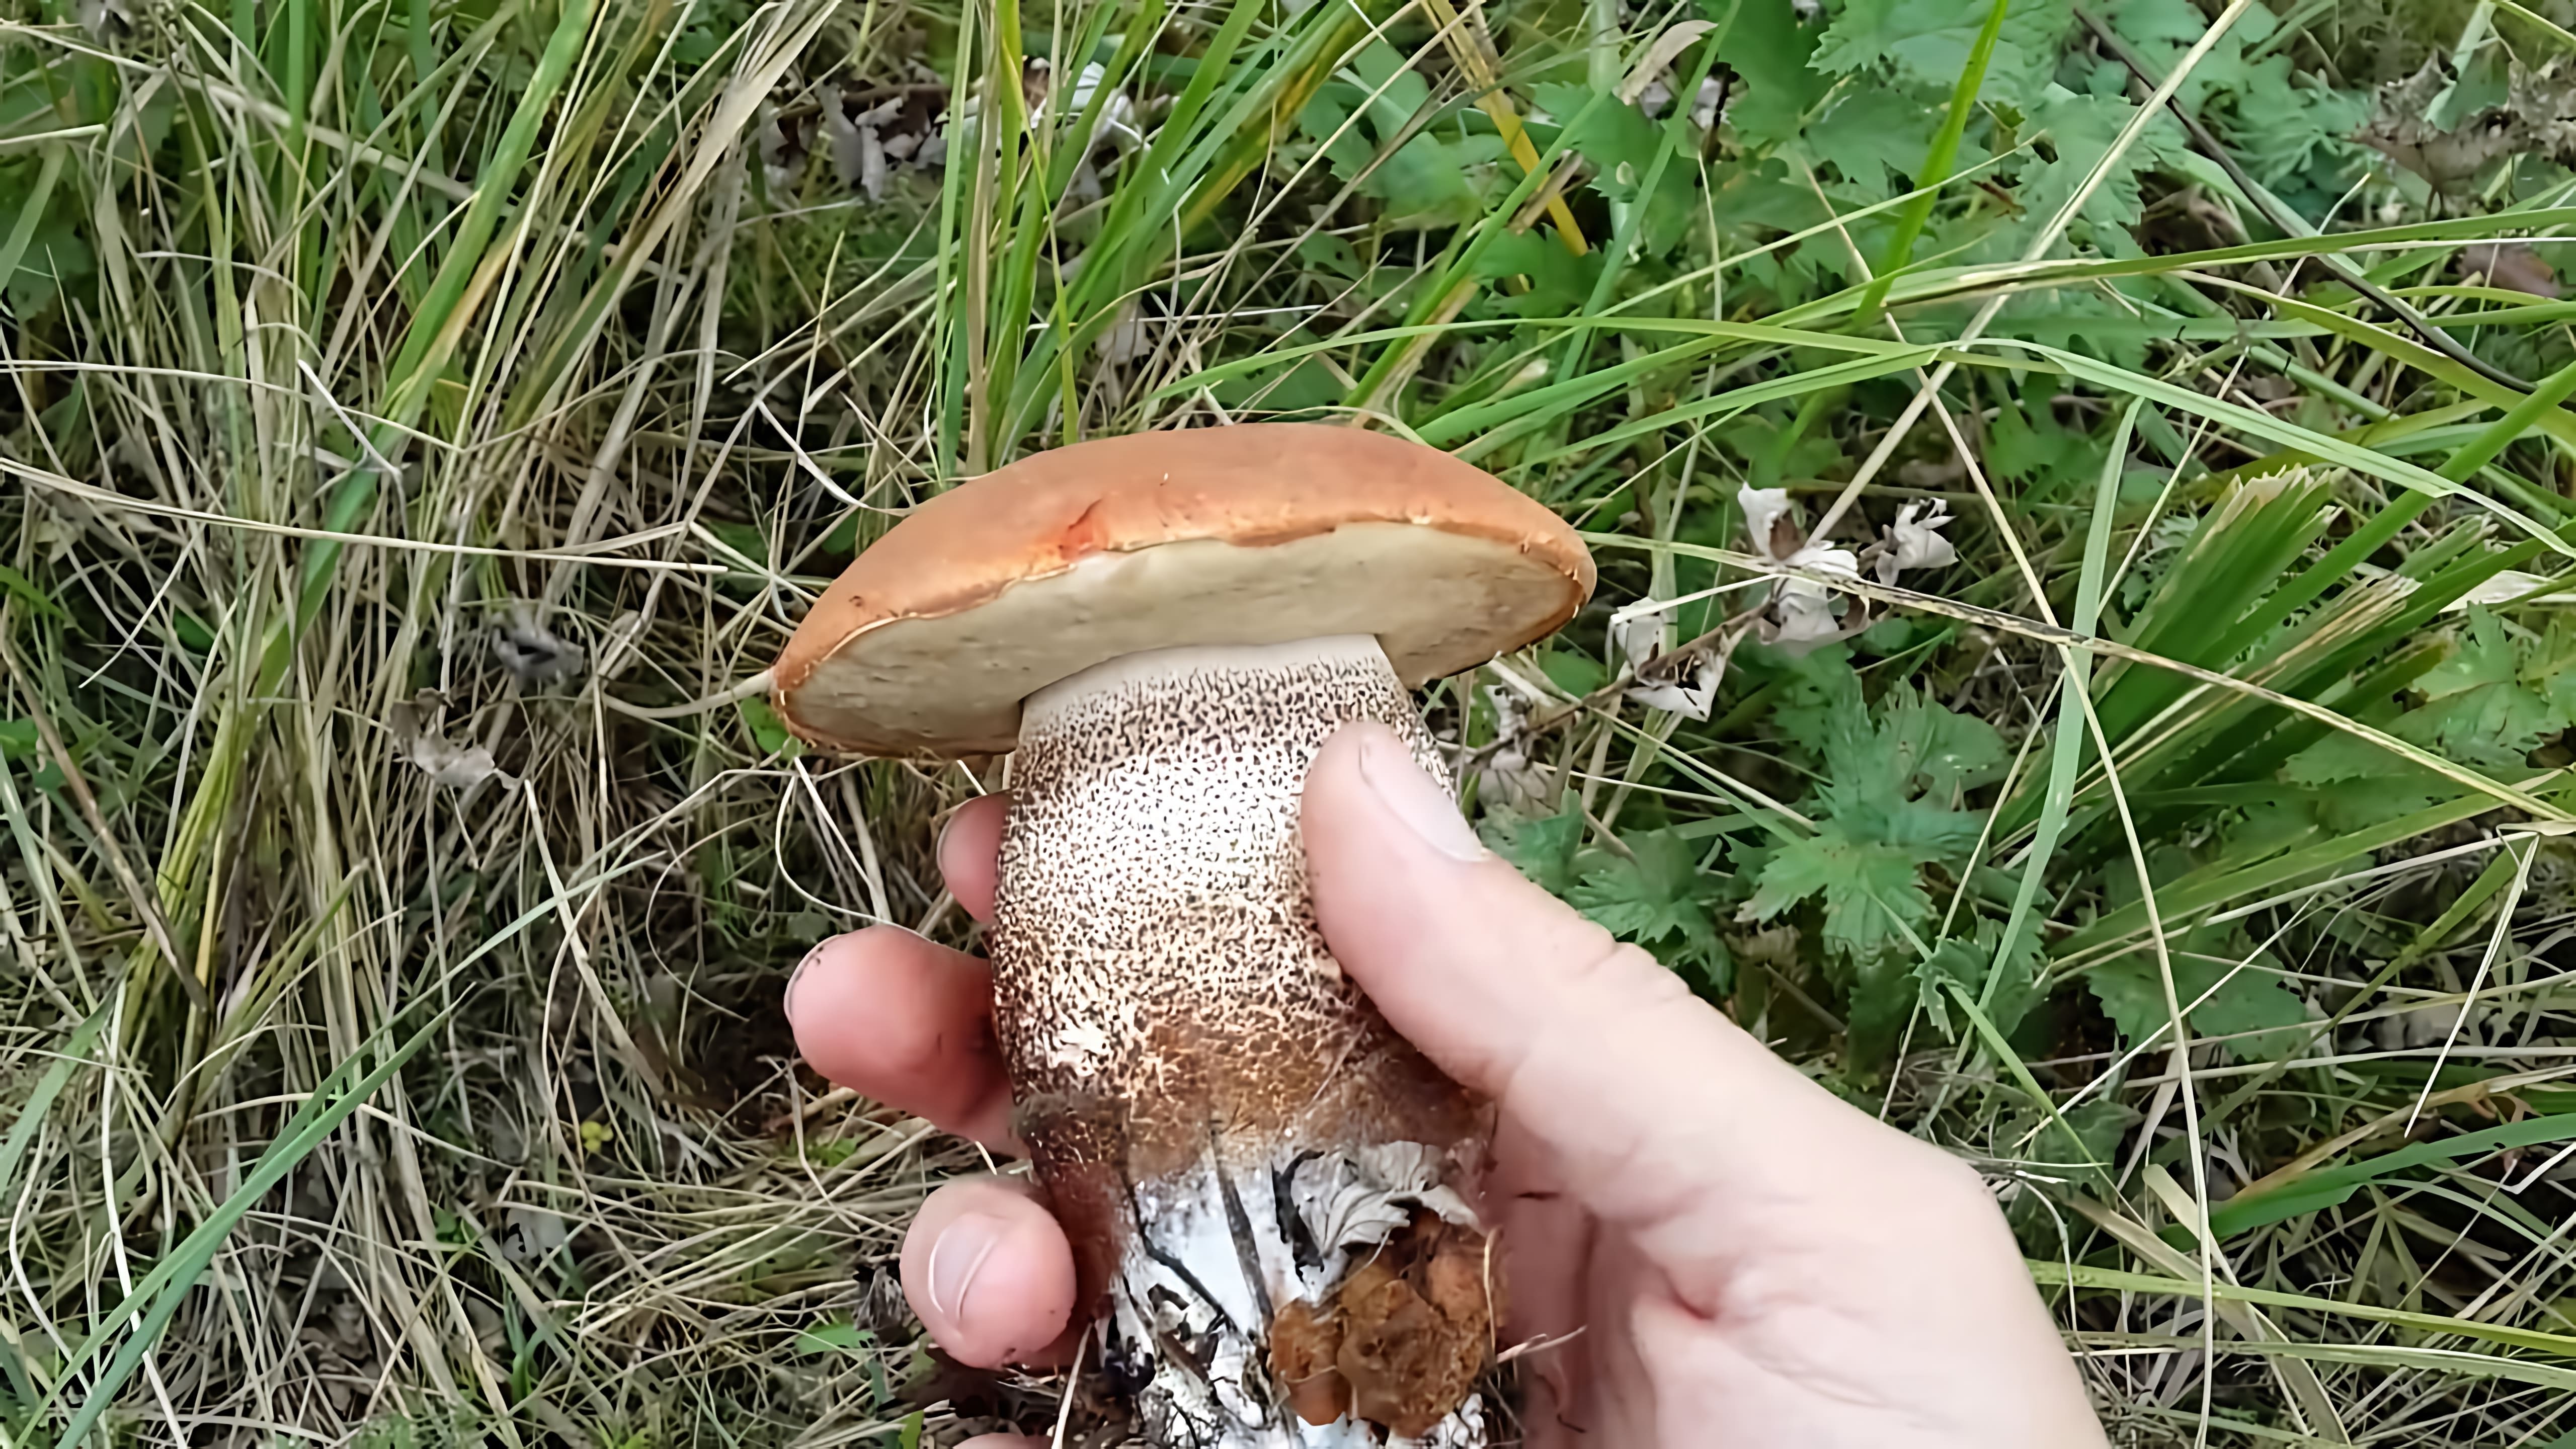 Видео показывает большой гриб белый гриб (Leccinum aurantiacum), который человек нашел во время сбора грибов